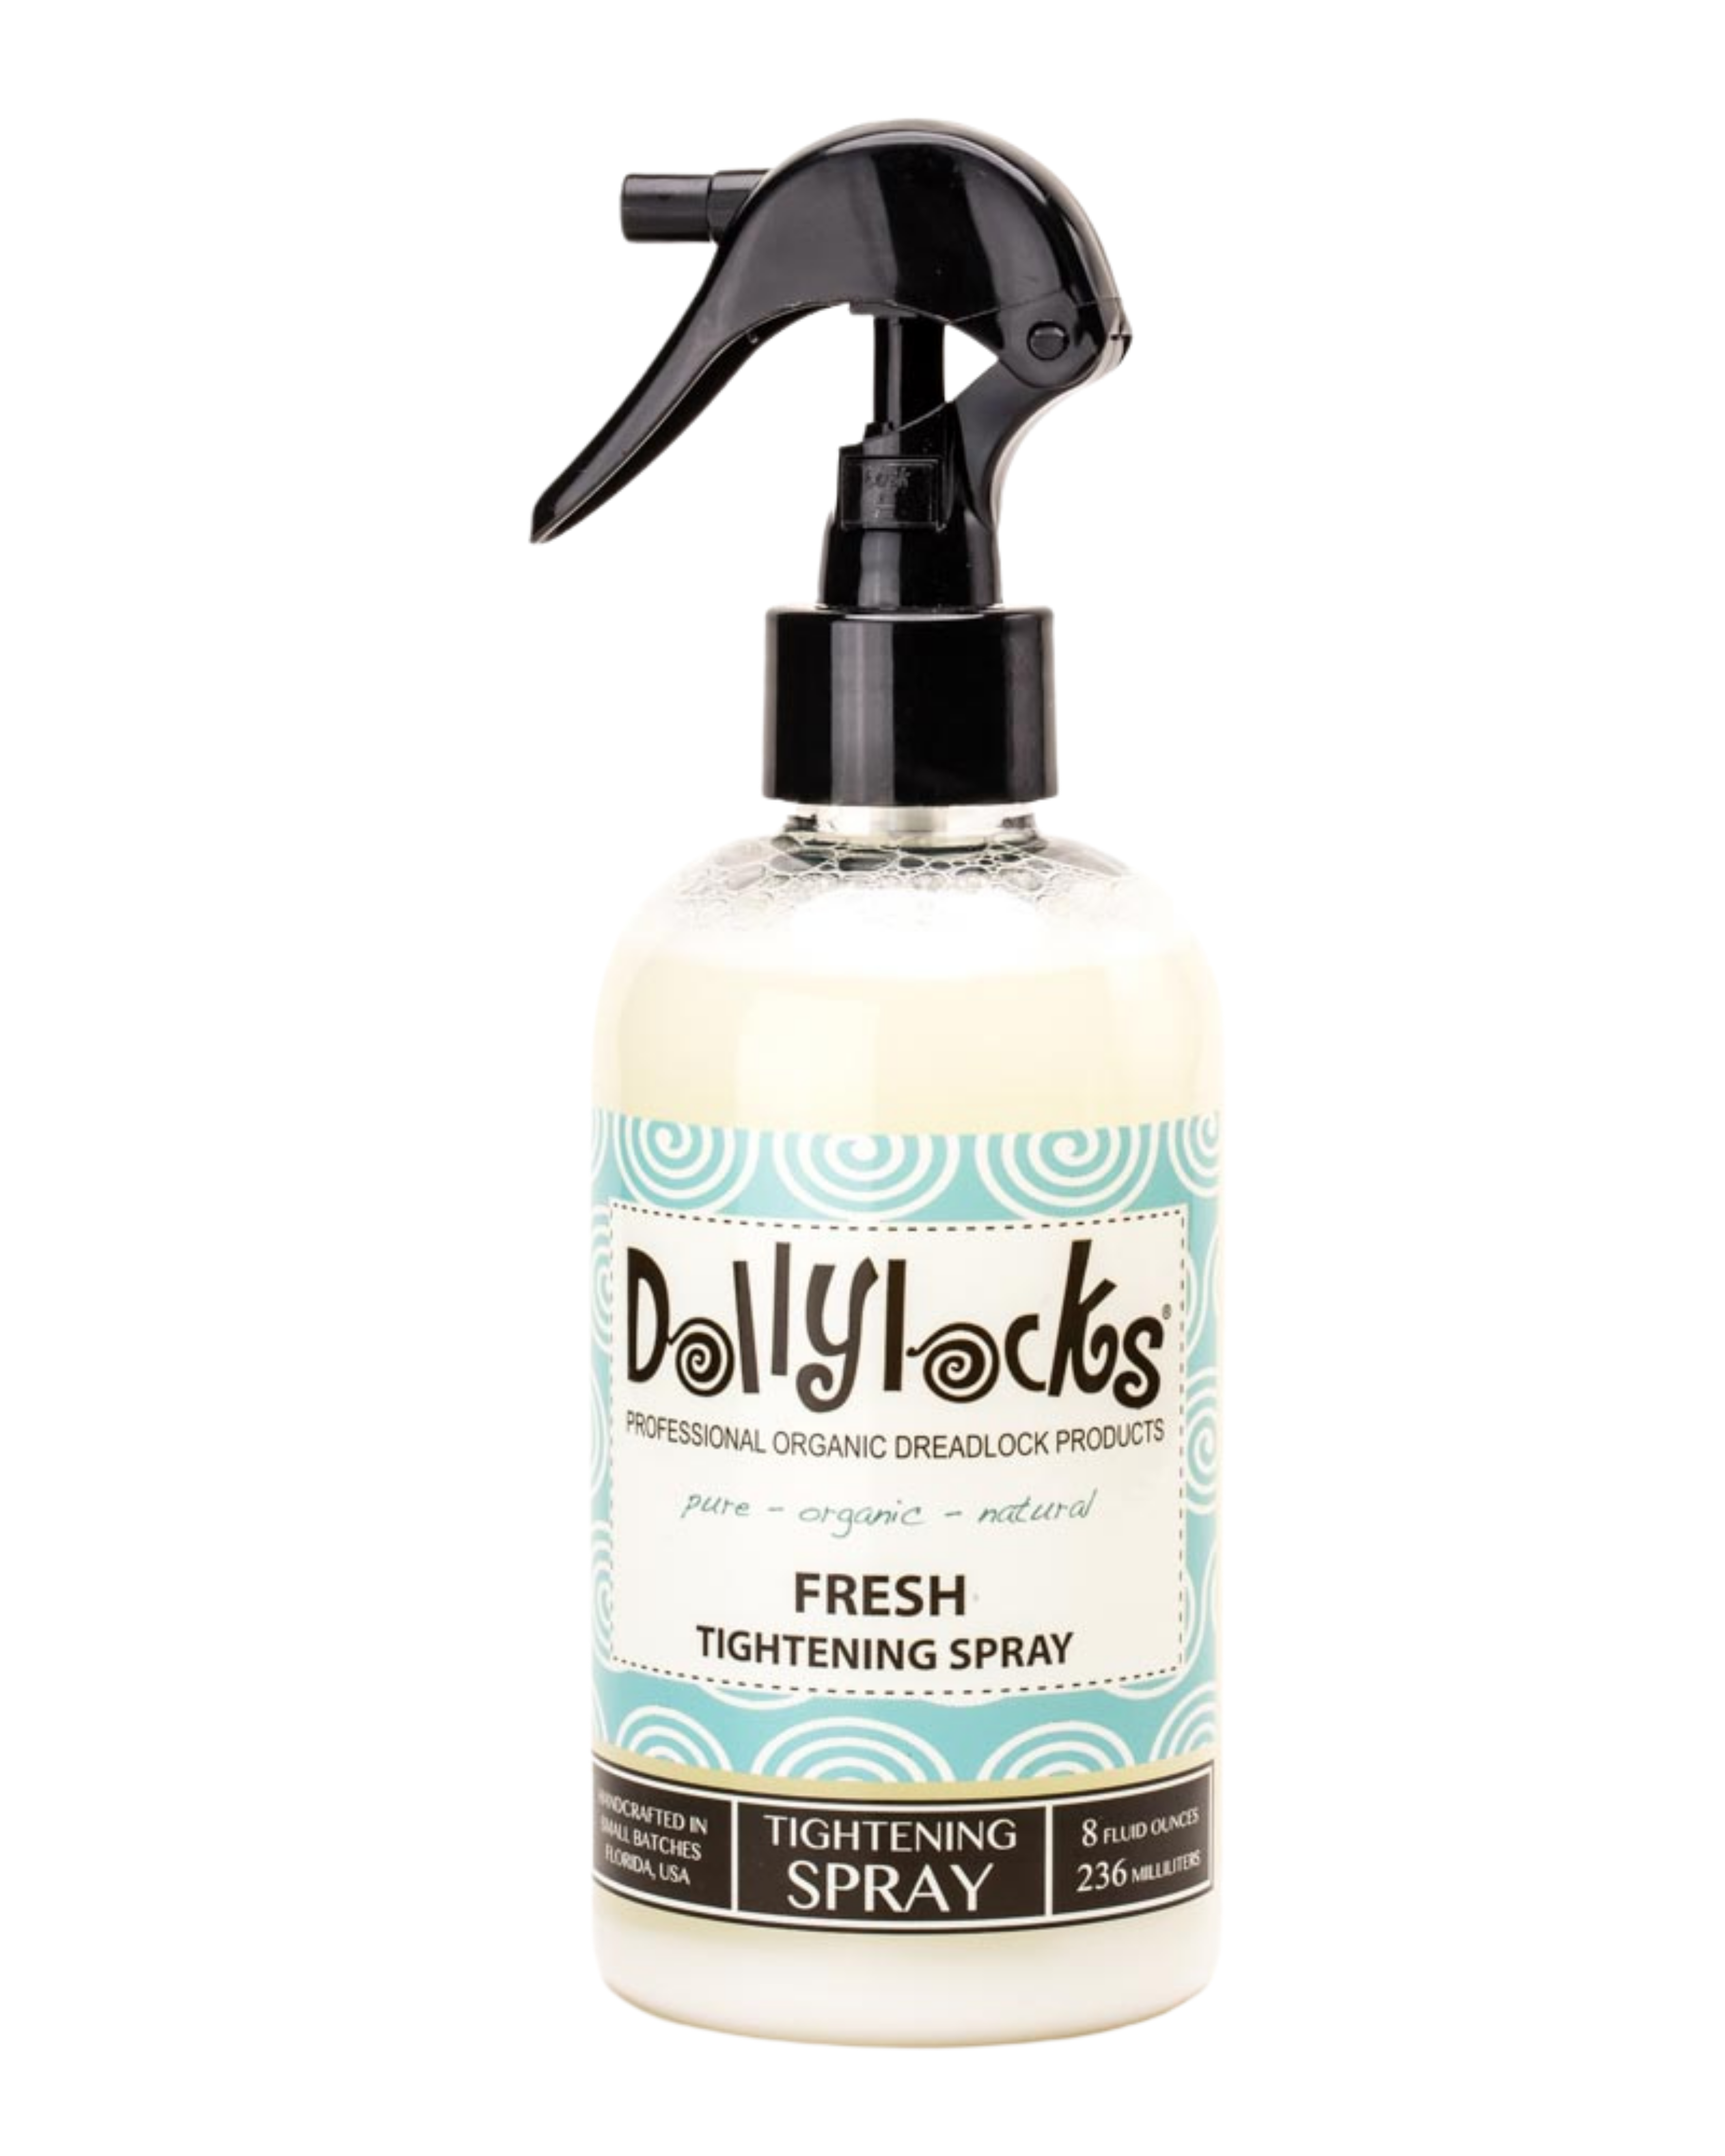 Fresh Tightening Spray – Dollylocks